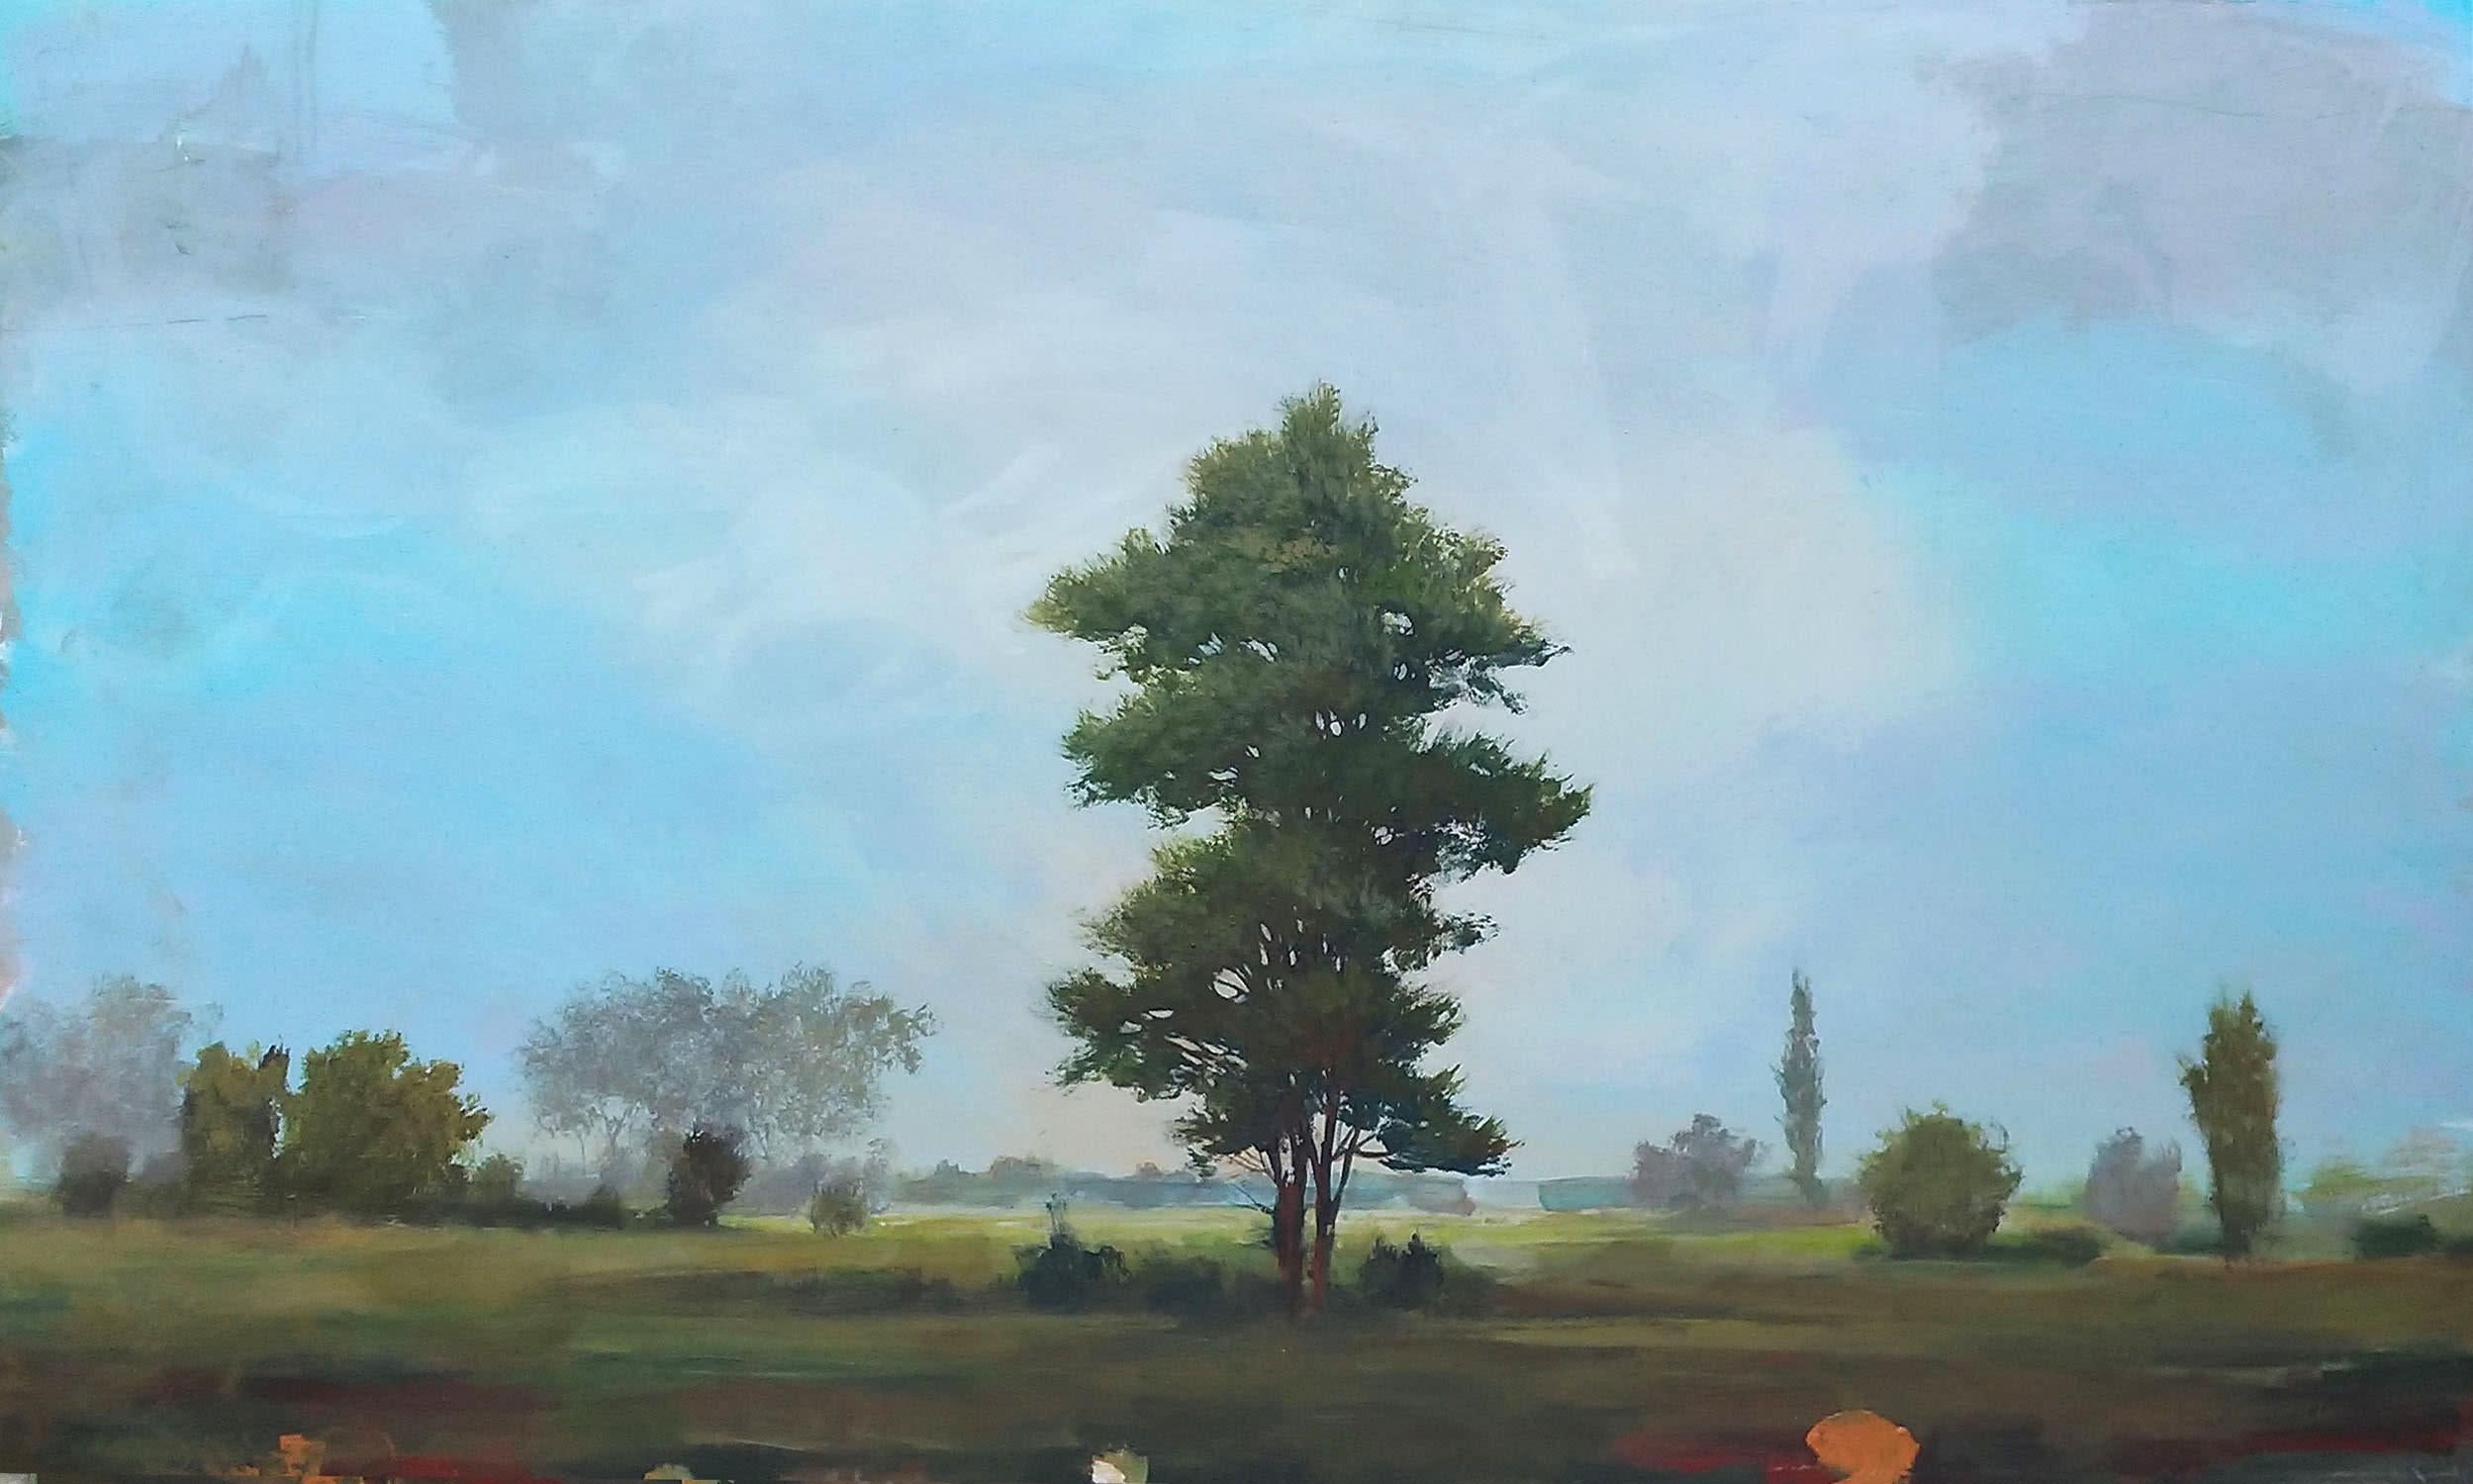 Peter Hoffer
White Pine, 2020
huile, acrylique et résine sur panneau
36 x 60 pouces
(hoff189)

Cette peinture originale de paysage sur panneau de Peter Hoffer est à la fois contemporaine et traditionnelle, avec une surface scintillante de résine